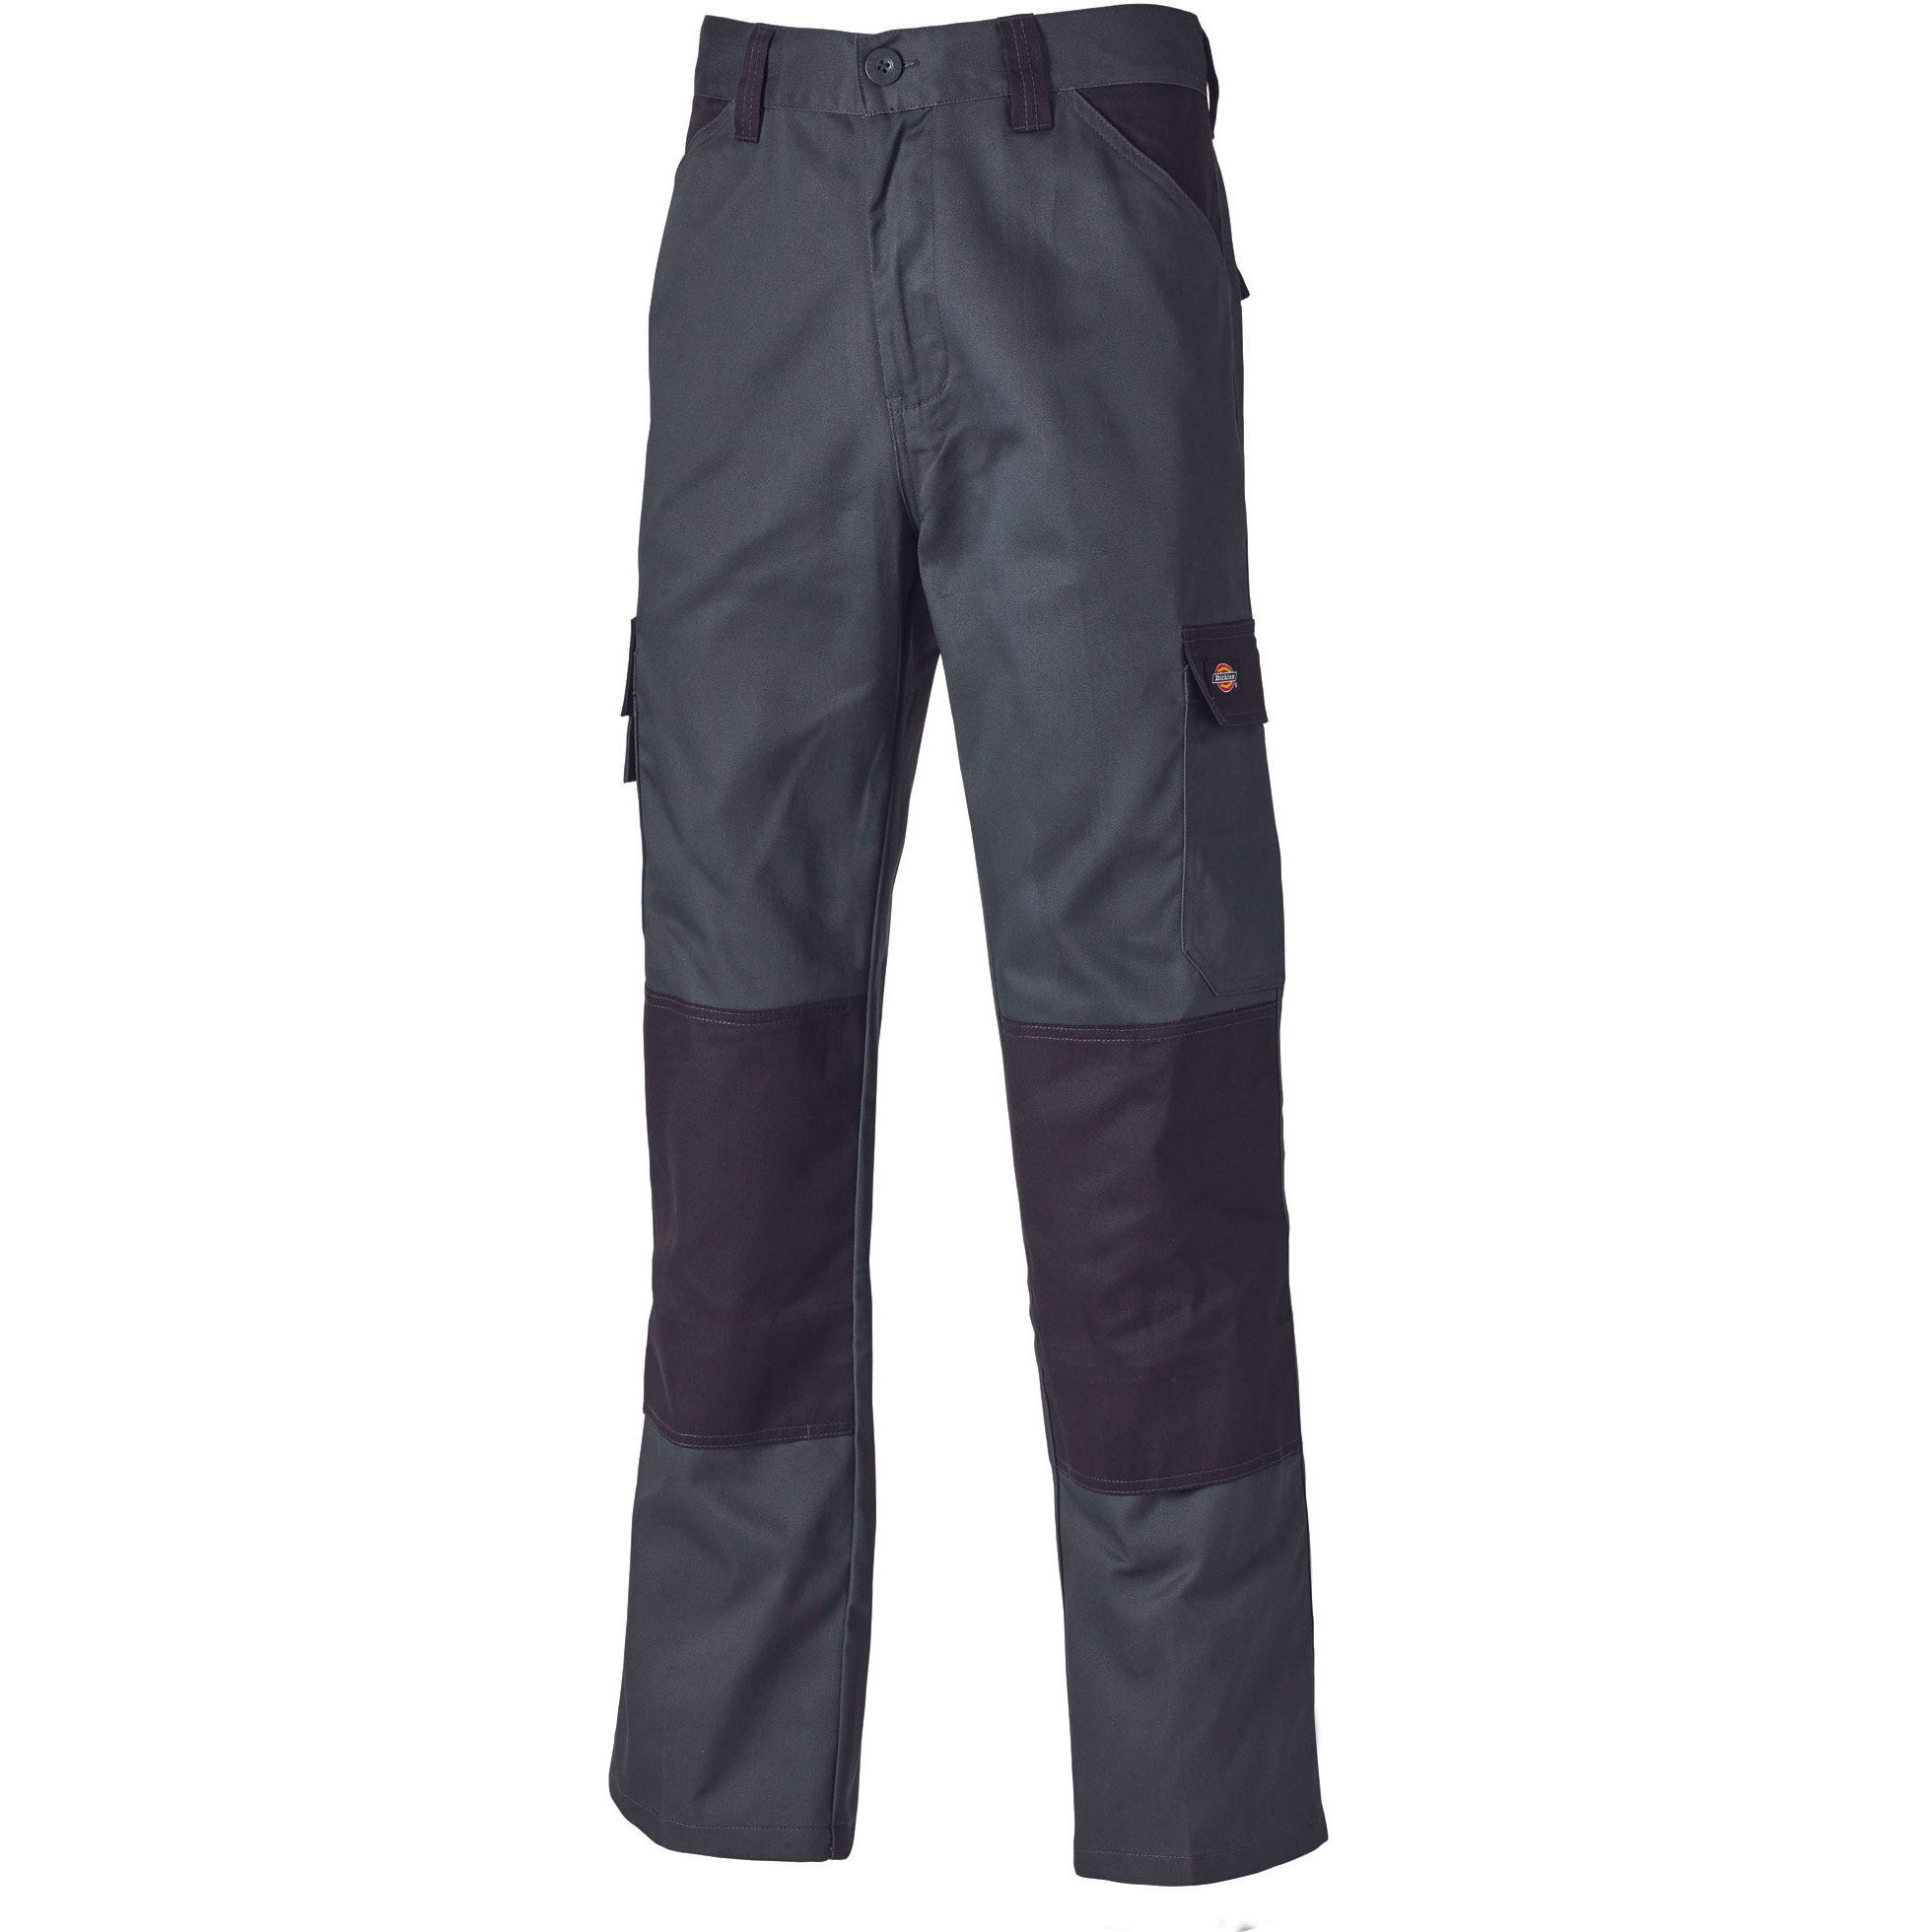 Pantalon Everyday Gris et noir- Dickies - Taille 50 5